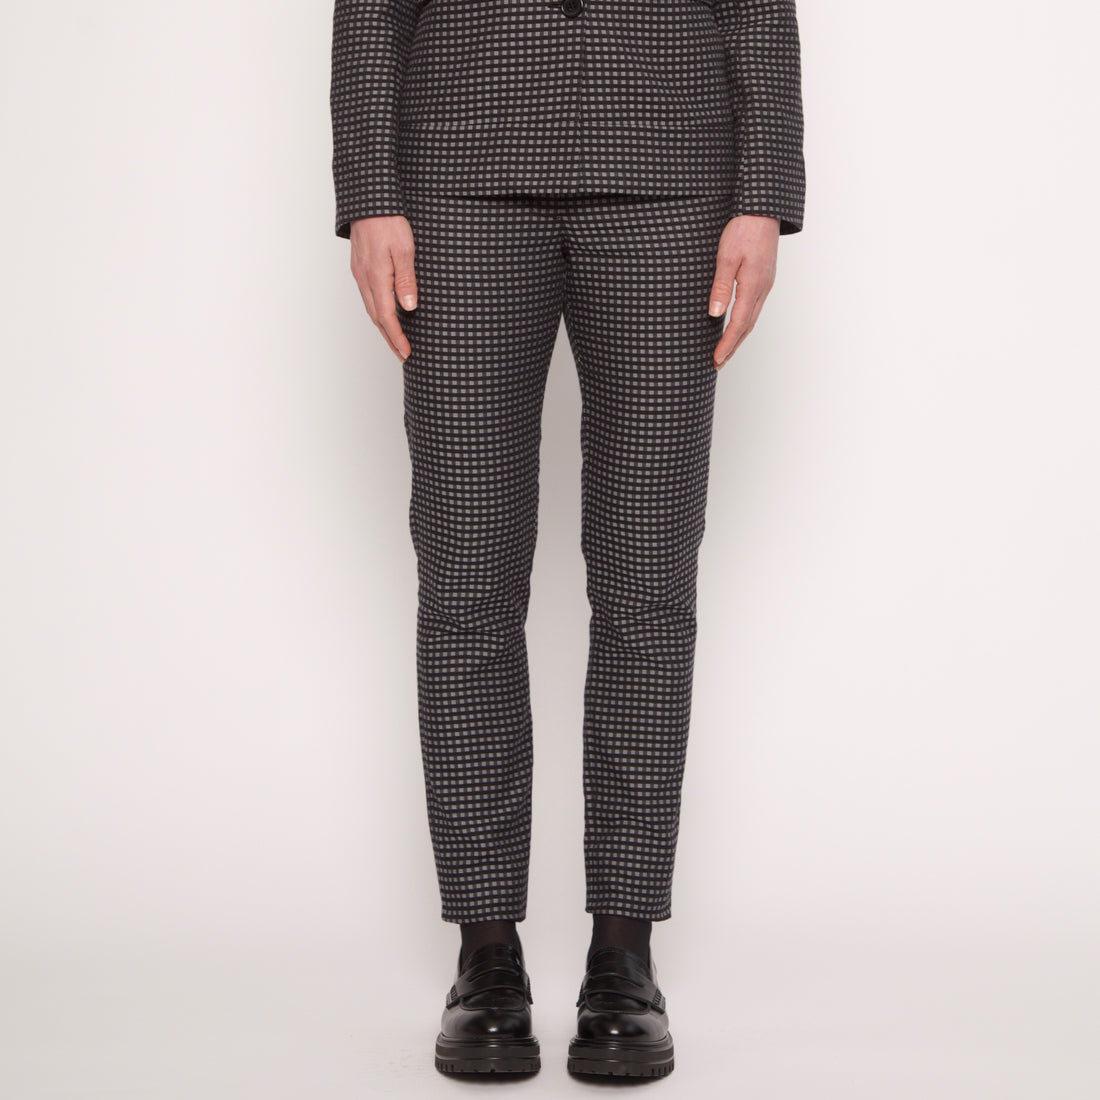 Pantalon tailleur slim - Coton - Petits carreaux gris et noirs - NUYHENN